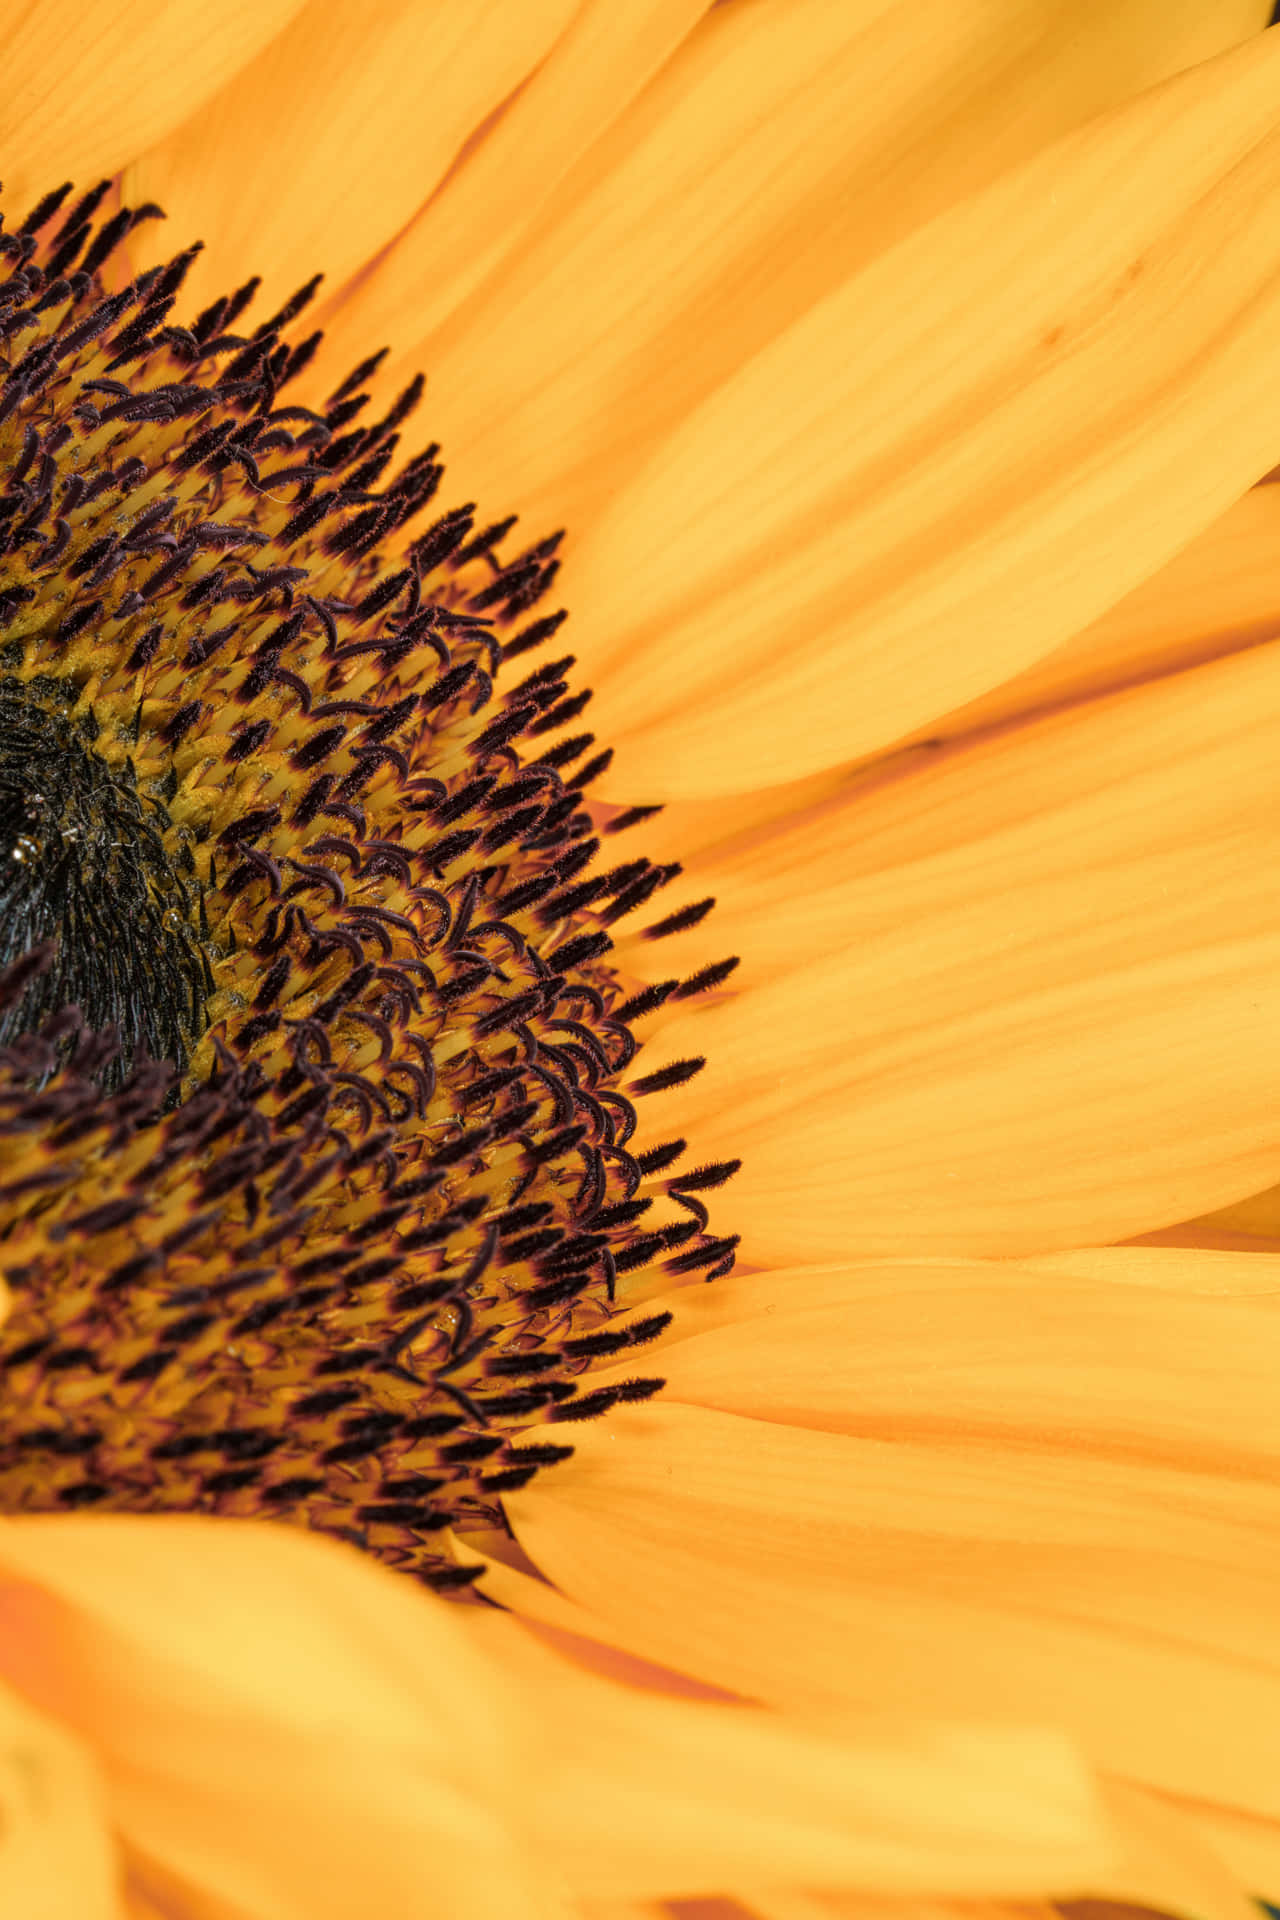 Versüßejeden Tag Mit Sonnenblumen-handy Wallpaper